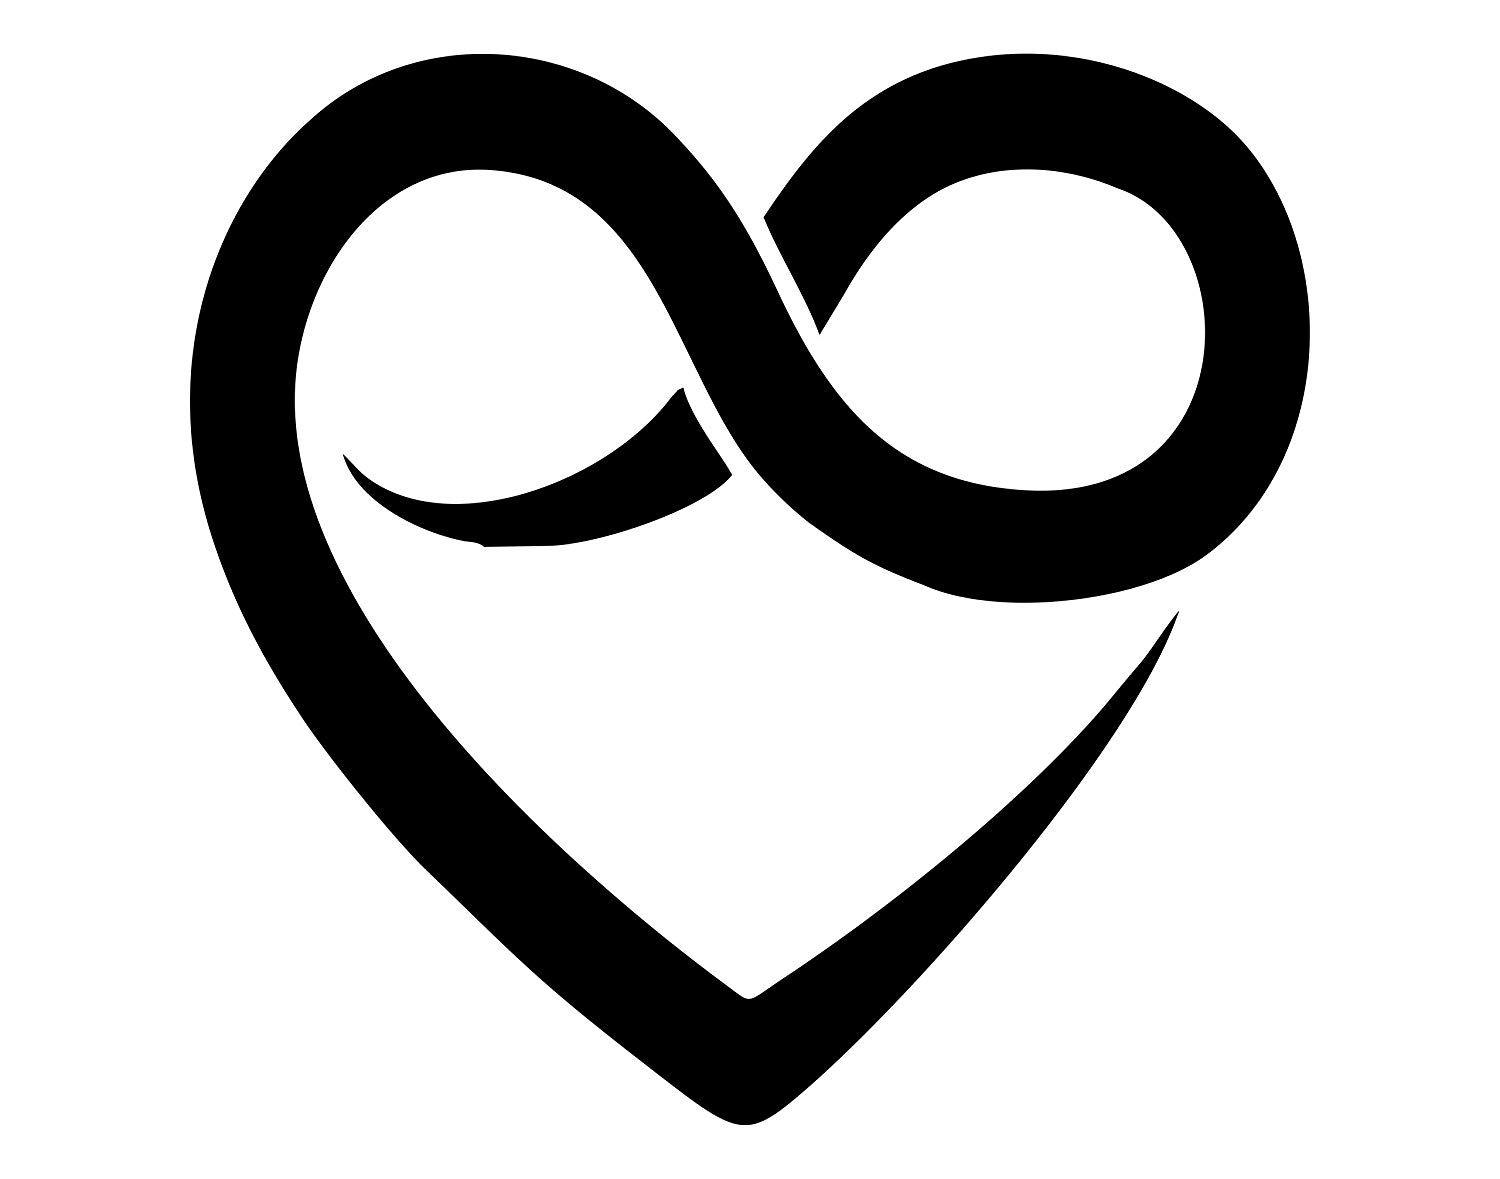 Heart Infinity Logo - Amazon.com: Heart with Infinity Symbol - 6